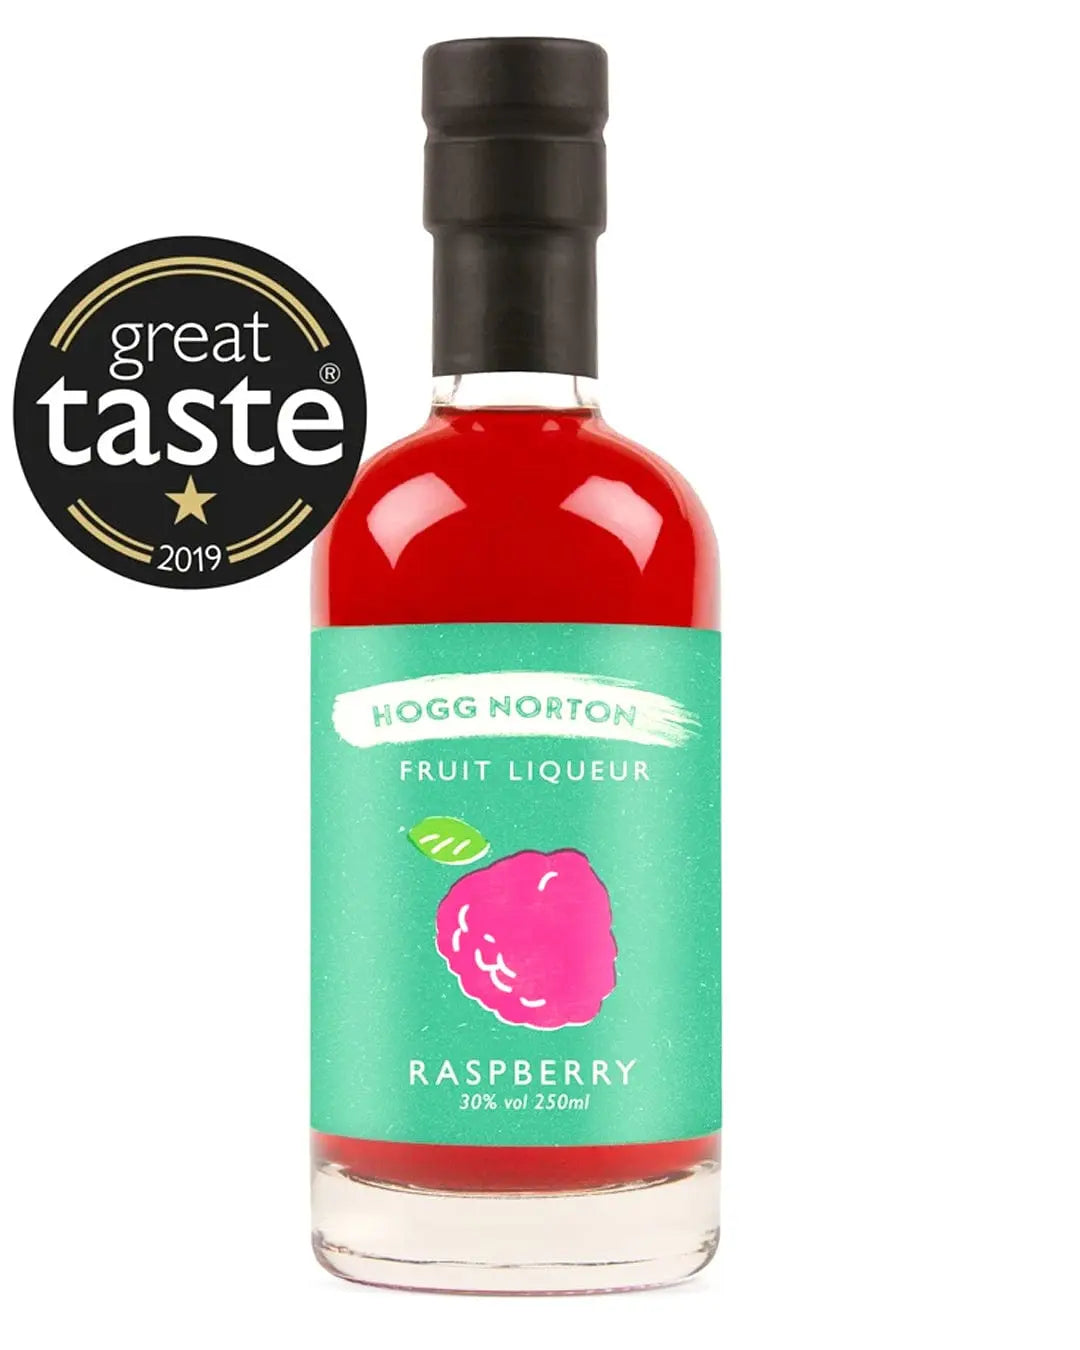 Hogg Norton Raspberry Fruit Liqueur, 25 cl Liqueurs & Other Spirits